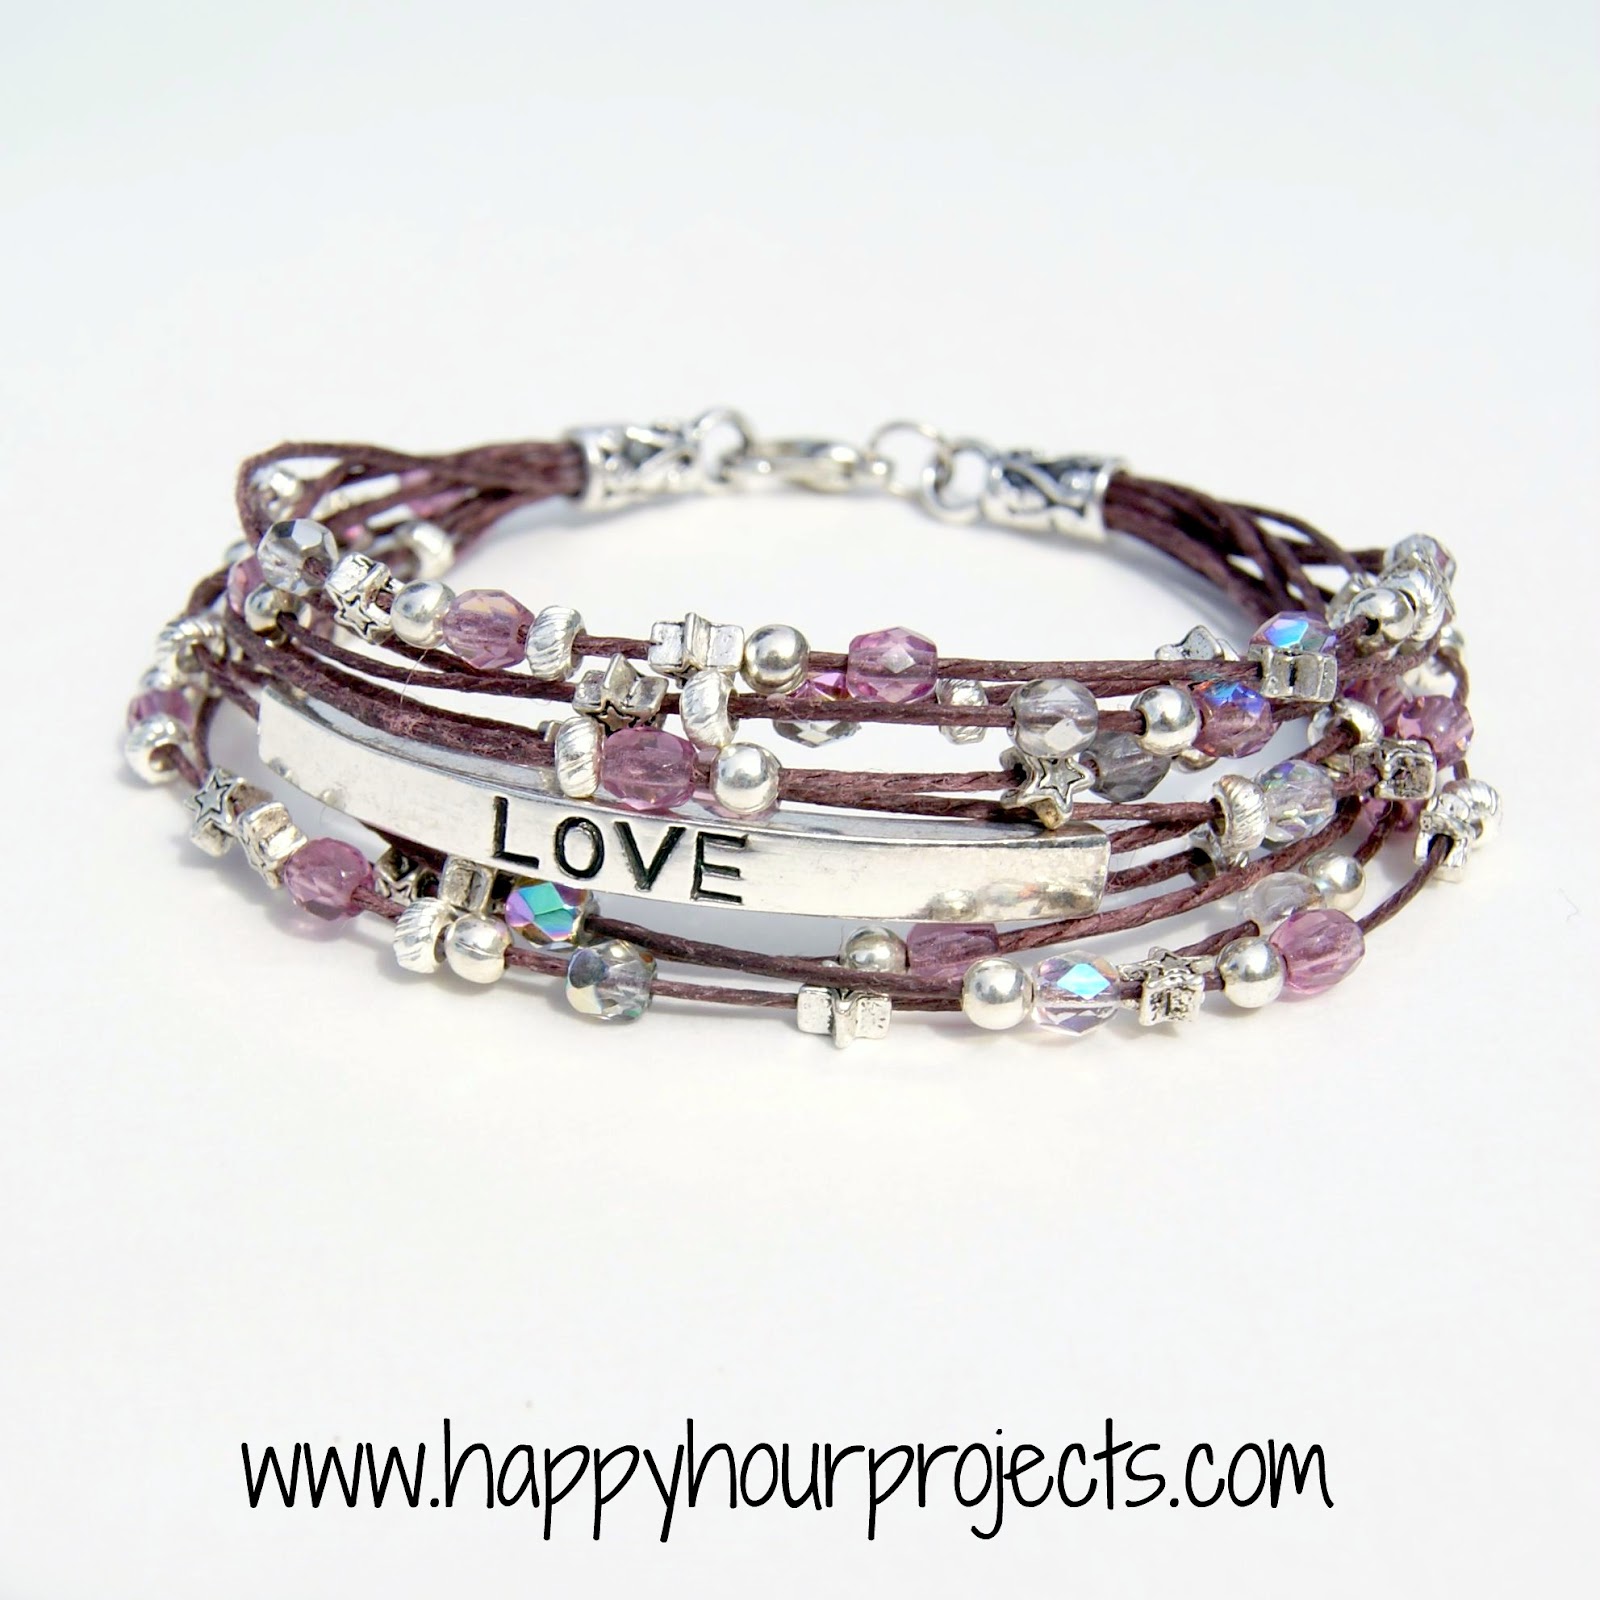 Beaded "Love" Bracelet